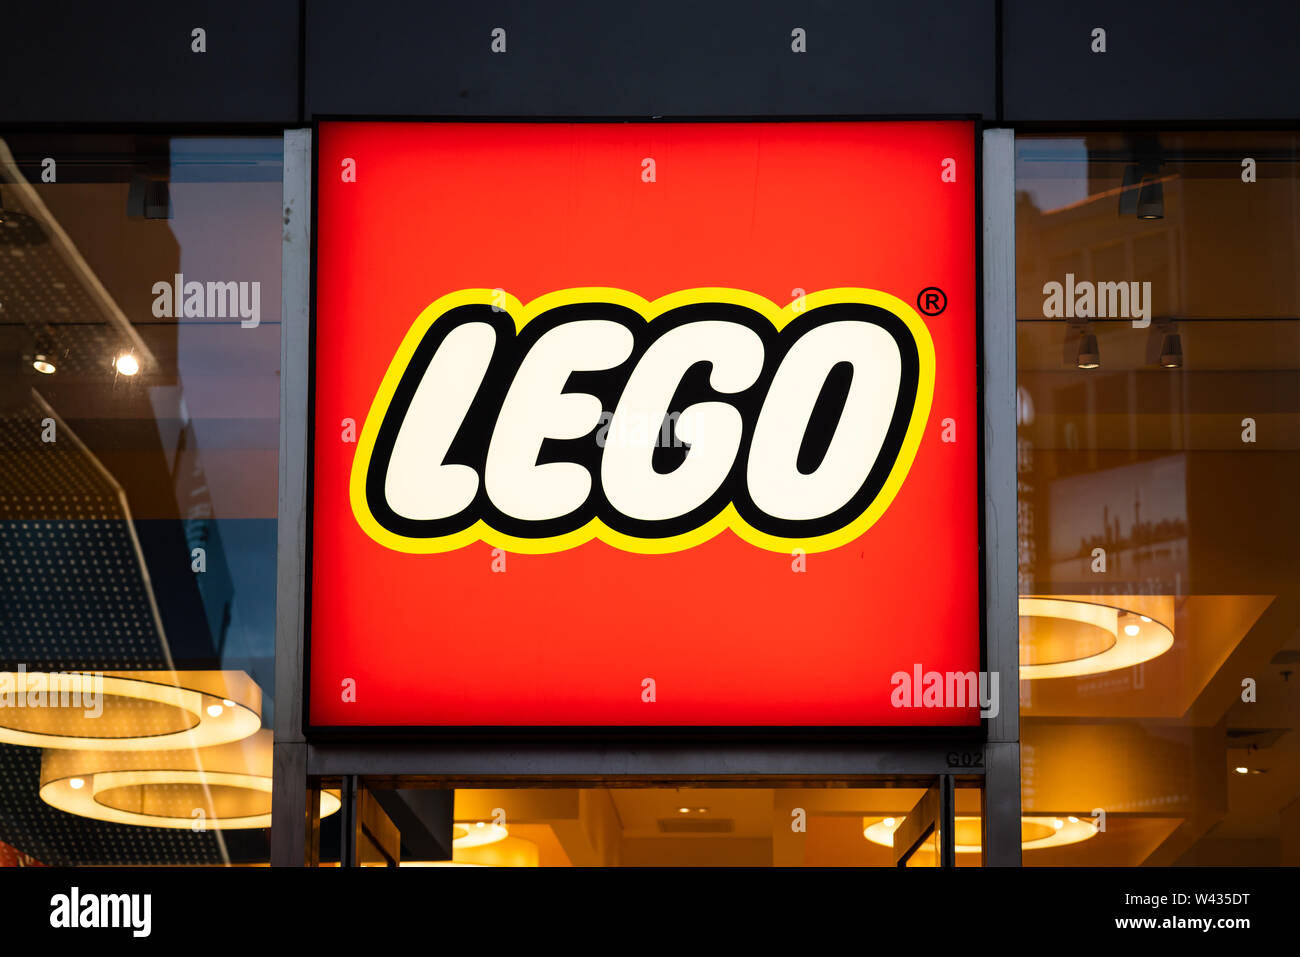 Eine dänische Spielzeug Produktion Firma Lego Logo in Shanghai gesehen  Stockfotografie - Alamy